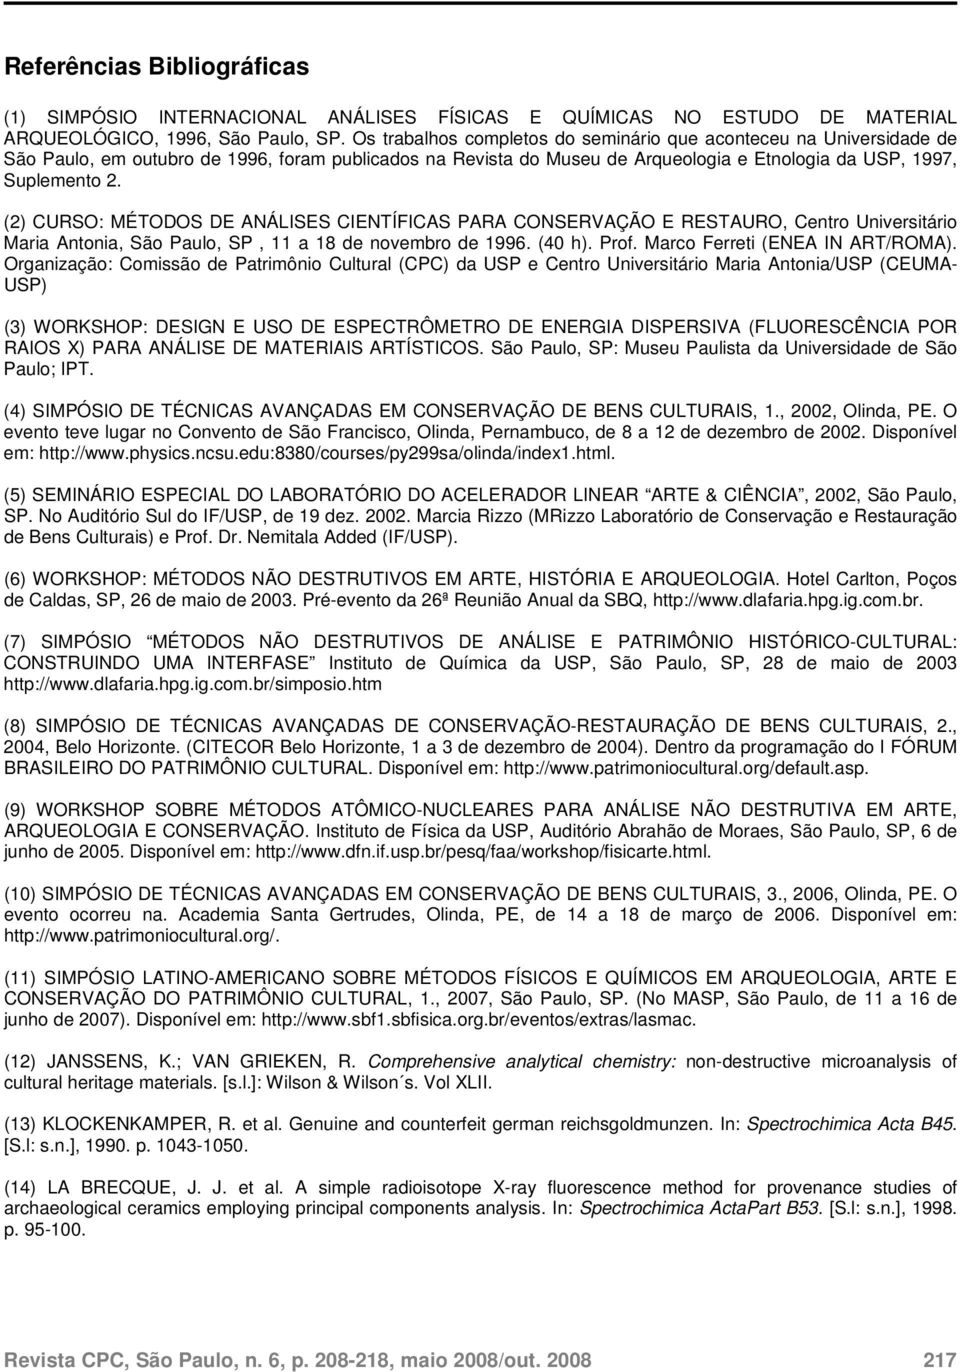 (2) CURSO: MÉTODOS DE ANÁLISES CIENTÍFICAS PARA CONSERVAÇÃO E RESTAURO, Centro Universitário Maria Antonia, São Paulo, SP, 11 a 18 de novembro de 1996. (40 h). Prof. Marco Ferreti (ENEA IN ART/ROMA).